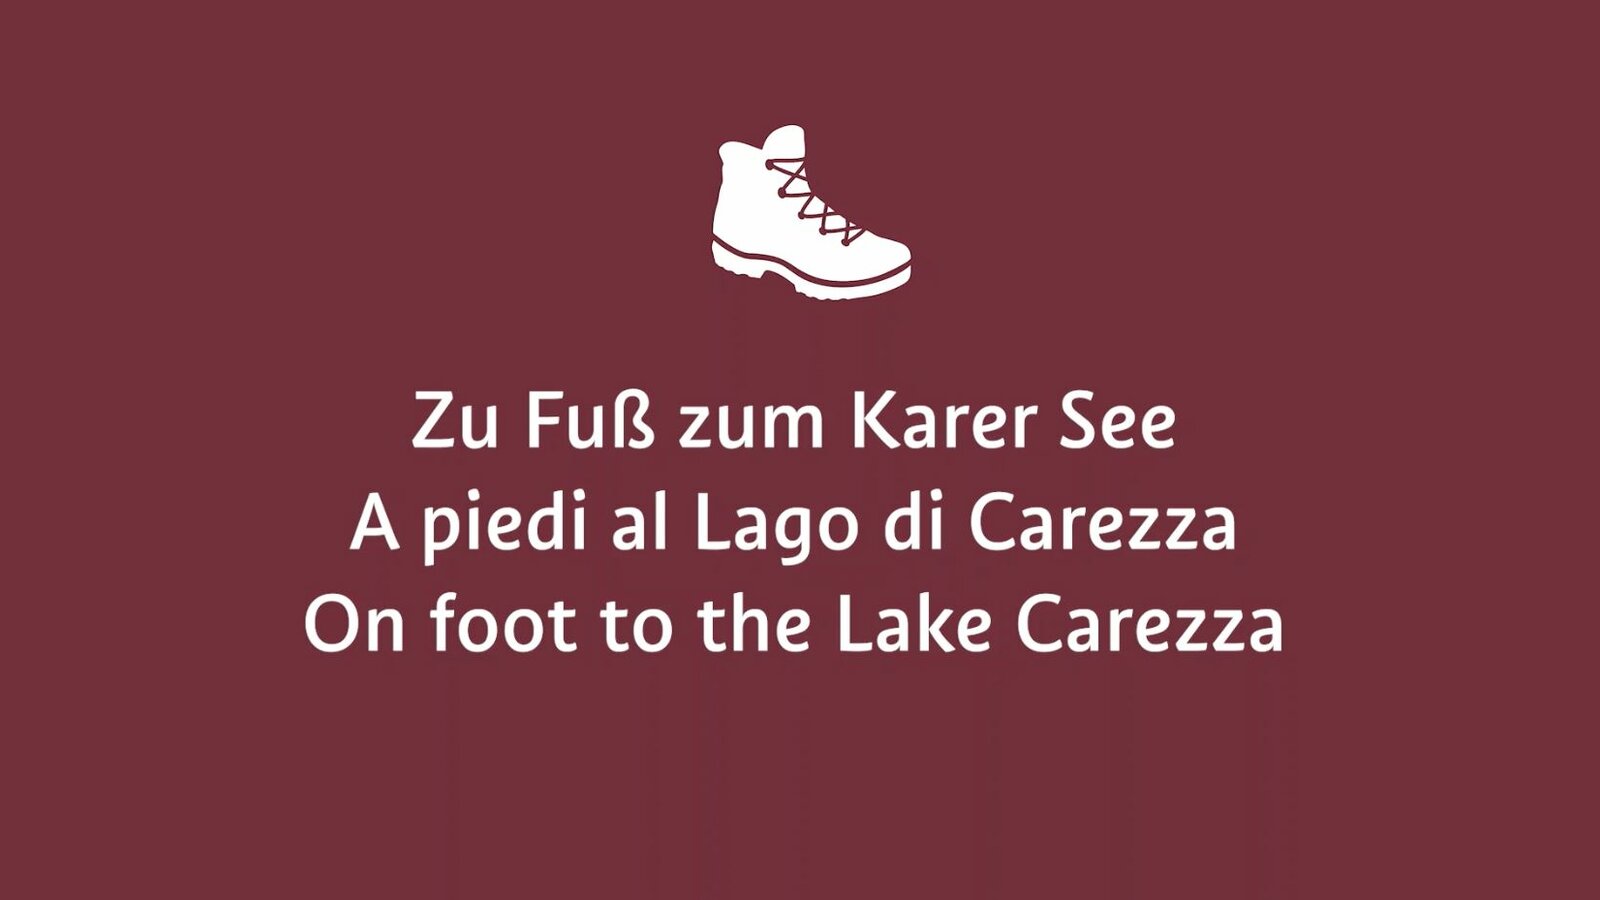 Startbild Video Zu Fuß zum Karer See | © Eggental Tourismus